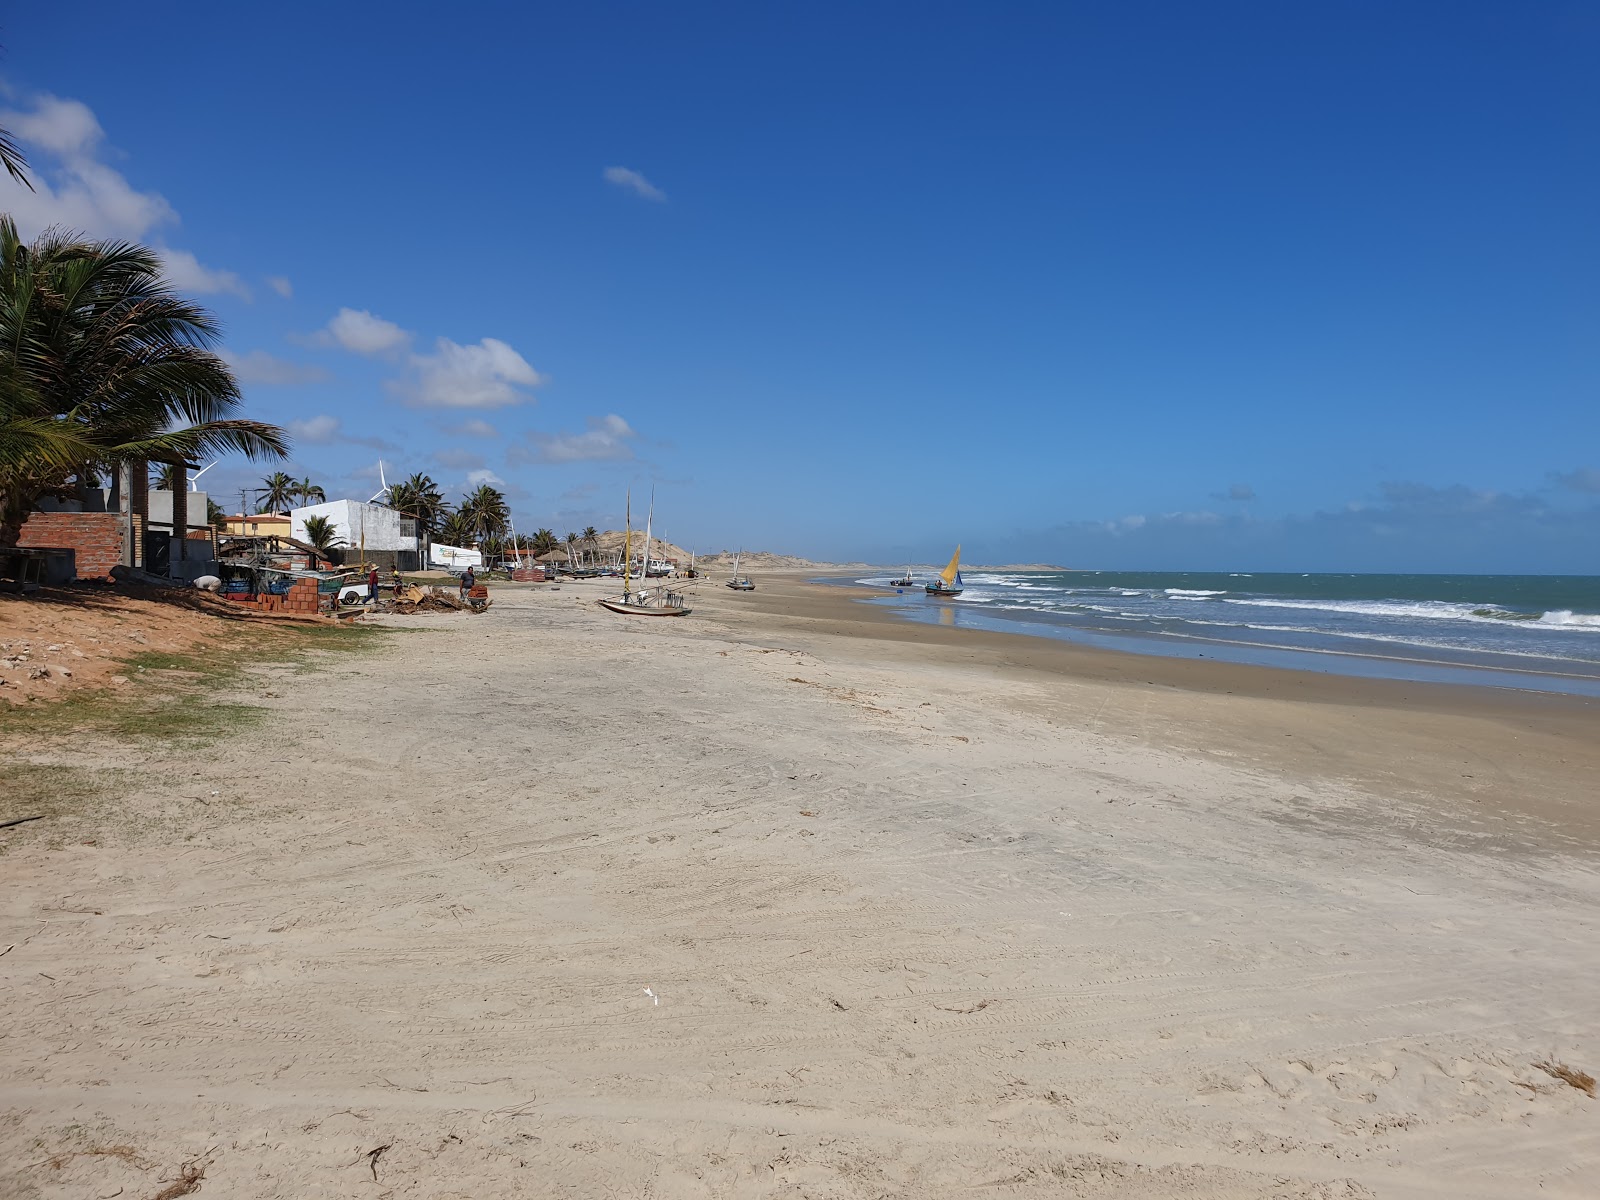 Zdjęcie Praia de Embuaca - popularne miejsce wśród znawców relaksu